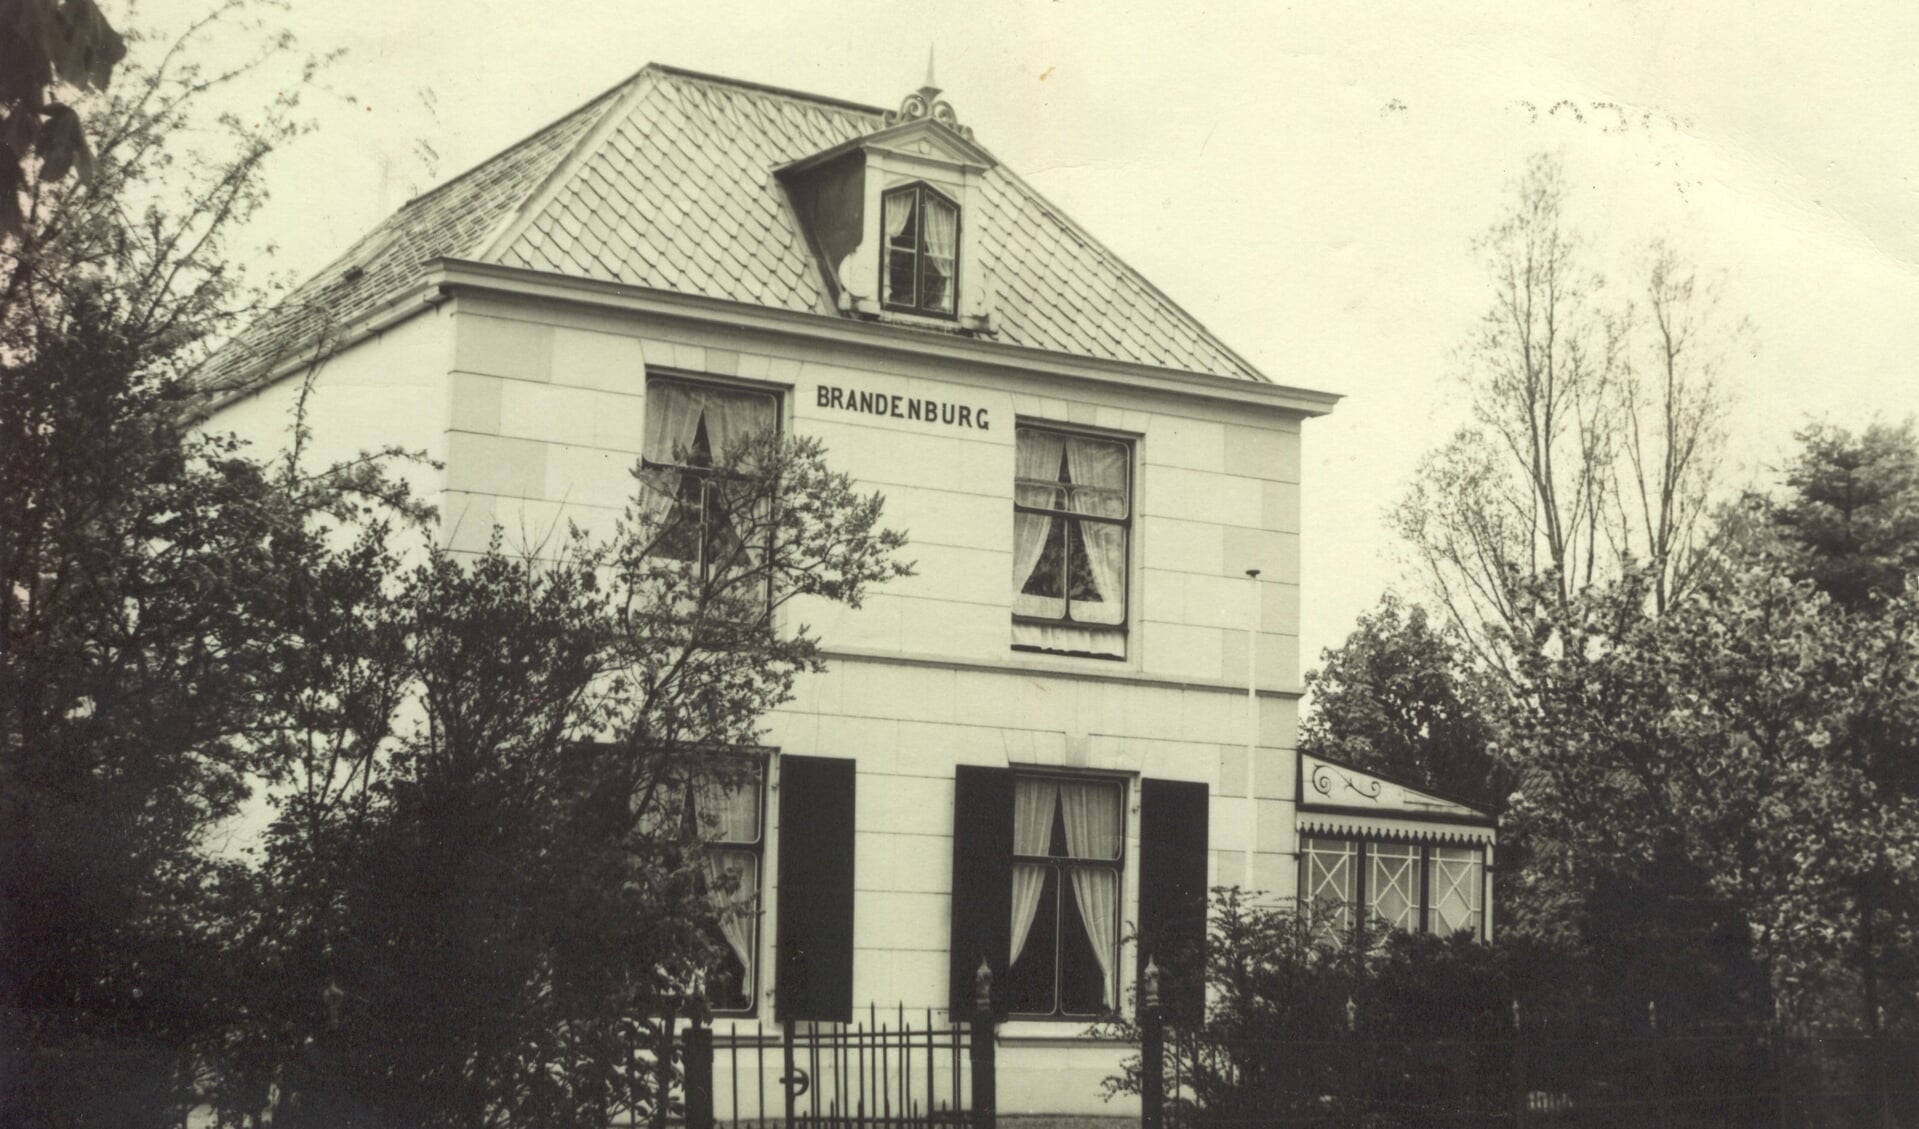 Het huis Brandenburg is gebouwd in 1849 voor de uit Emmerich afkomstige 'chirurgijn' Joseph Gewaltig. Hij kwam als bijna zestigjarige in 1840 naar Maartensdijk als 'genees-, heel- en vroedmeester'. Het huis heeft de naam Brandenburg gekregen omdat de vrouw van gemeentesecretaris E. Kwint, die hier van 1916 tot 1965 heeft gewoond, van de boerderij Brandenburg in De Bilt kwam. 